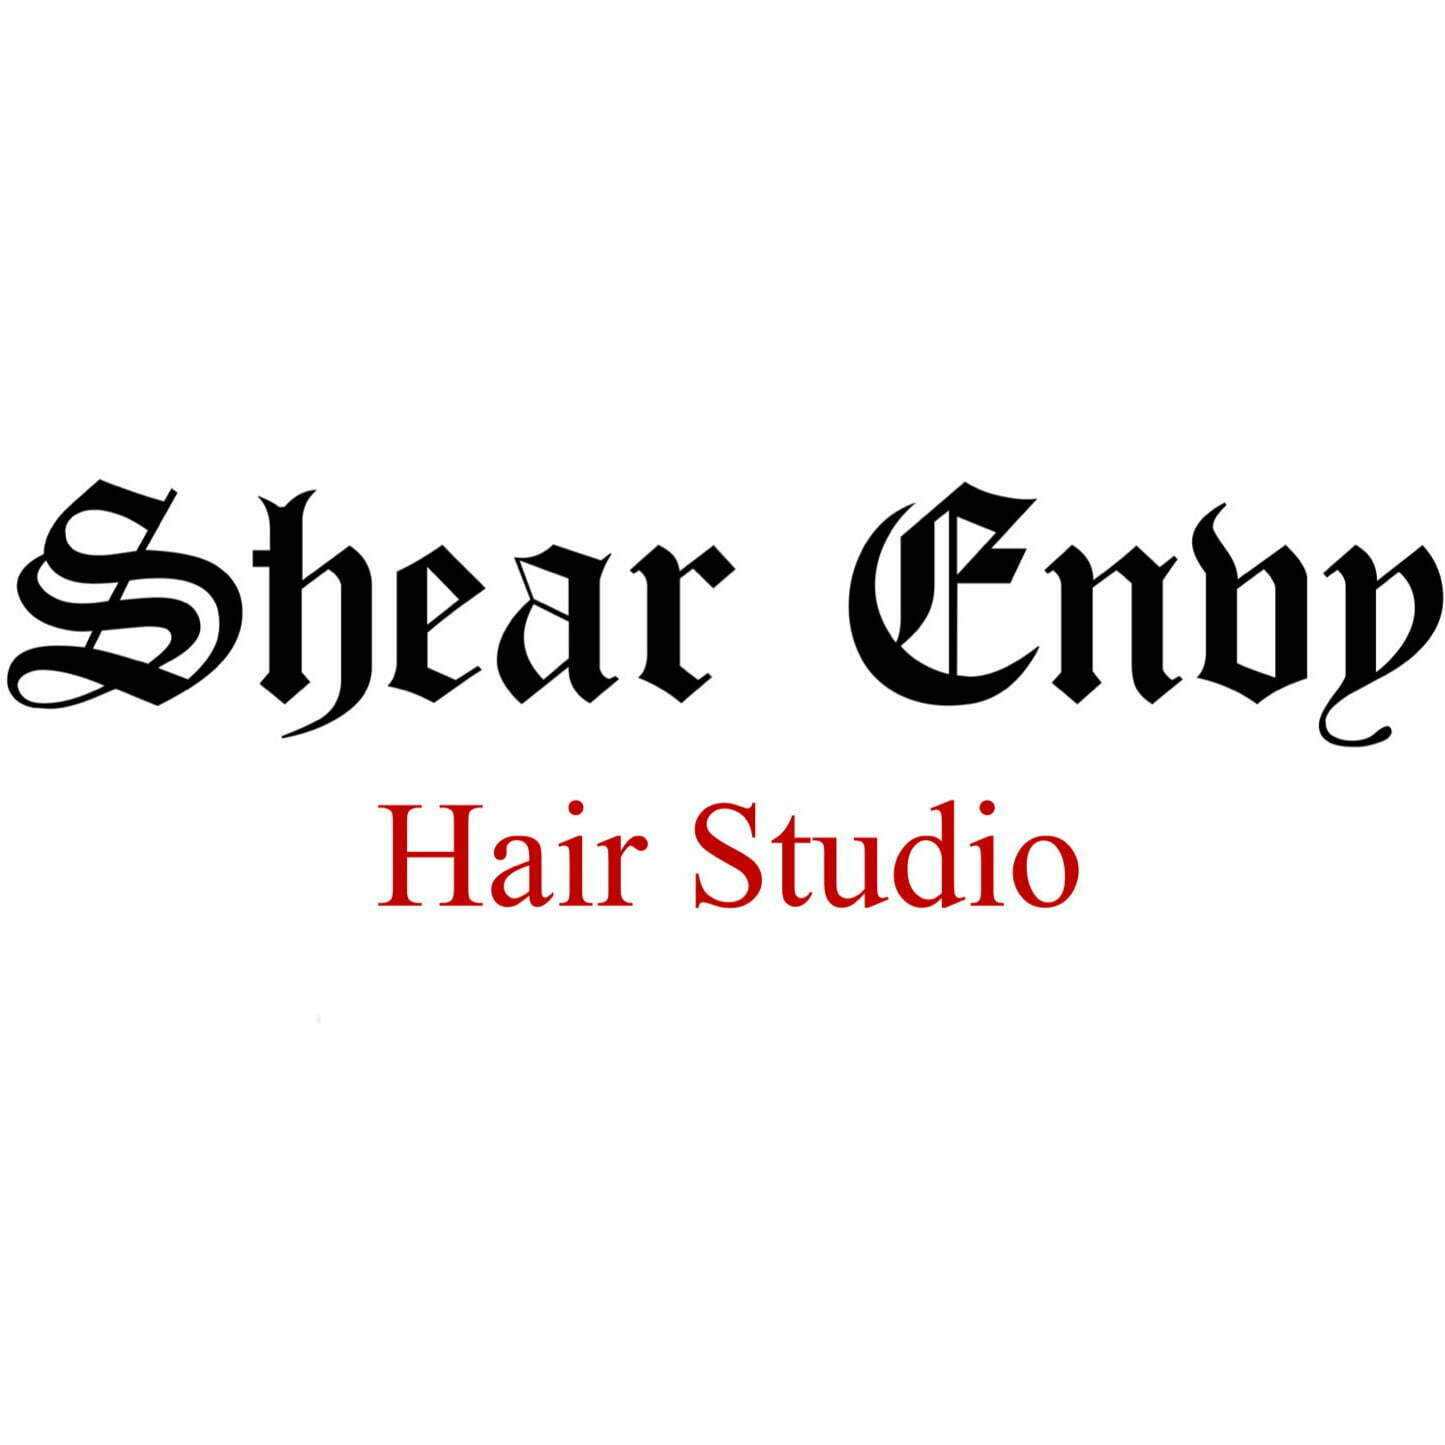 Shear Envy Salon Studio